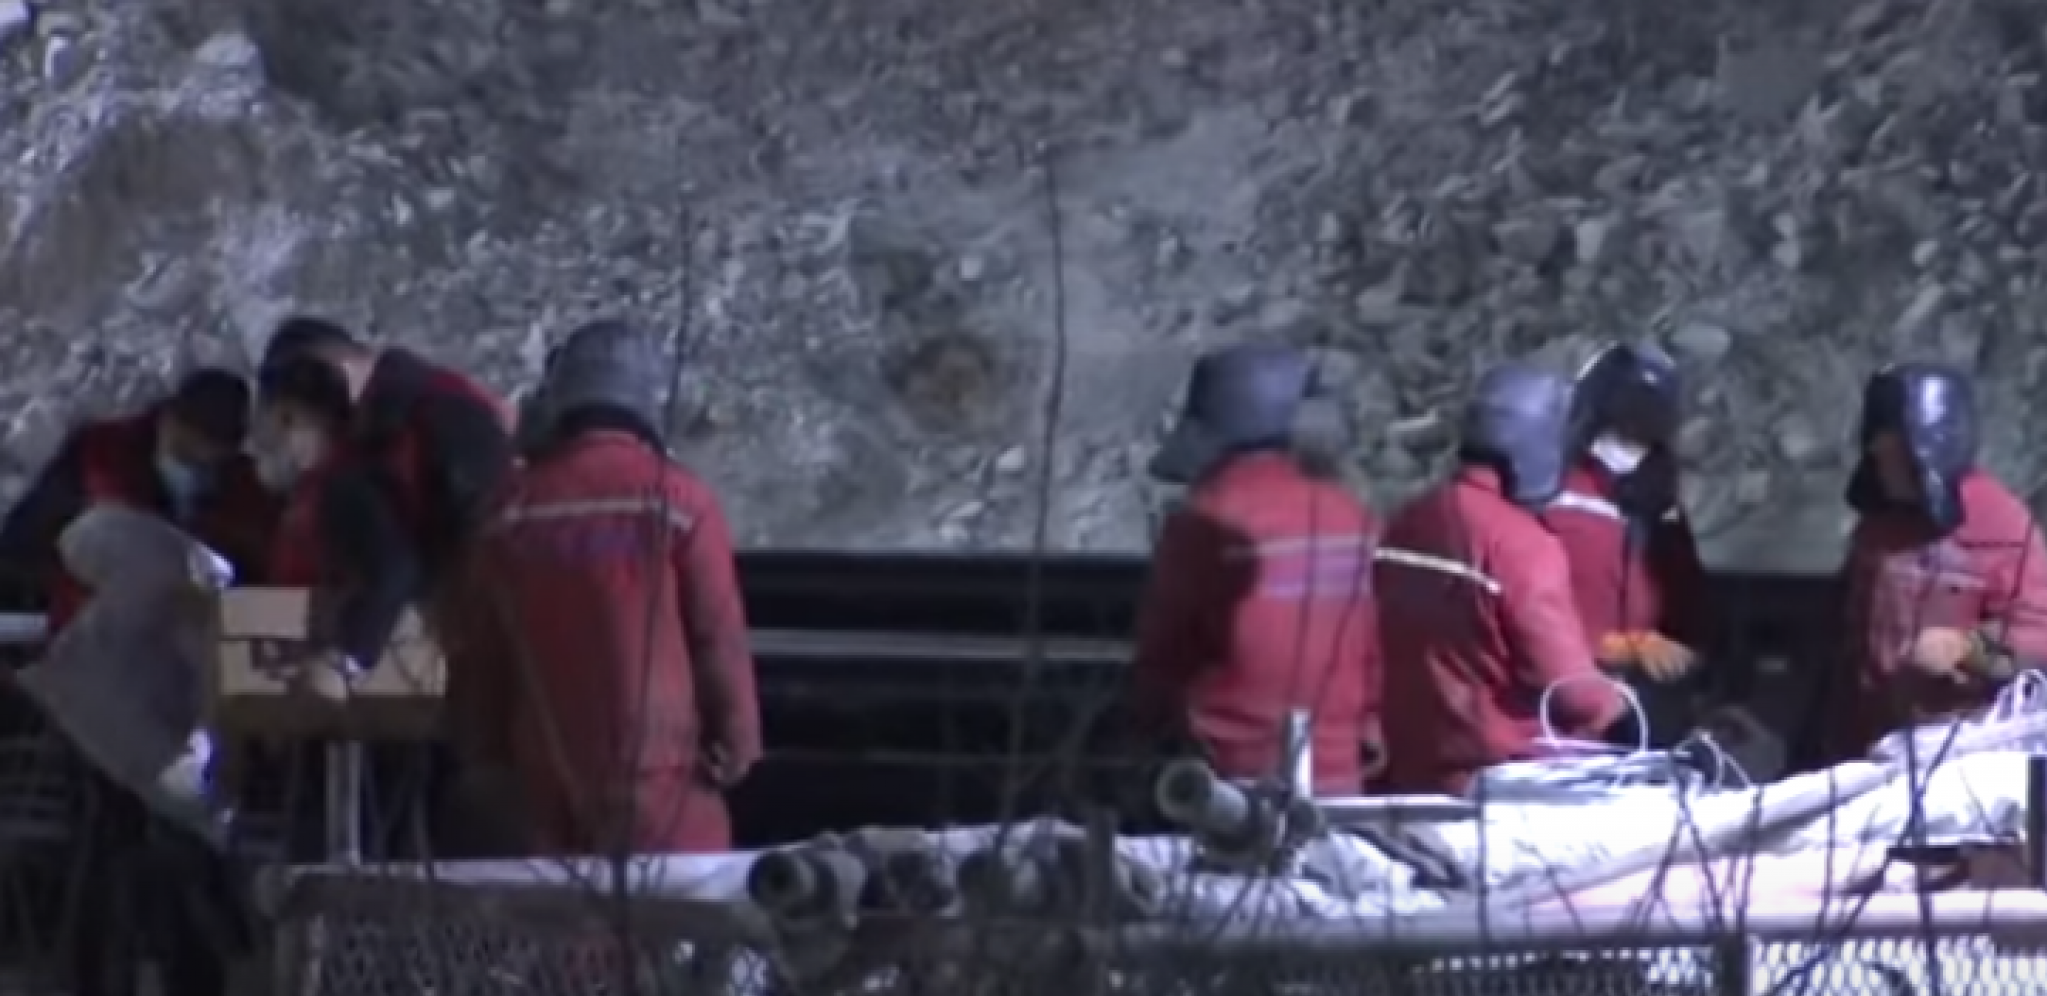 DRAMATIČNO! ZATRPANI LJUDI U RUDNIKU ZLATA Spasioci se bore da lociraju nestalih 18 rudara u Kini